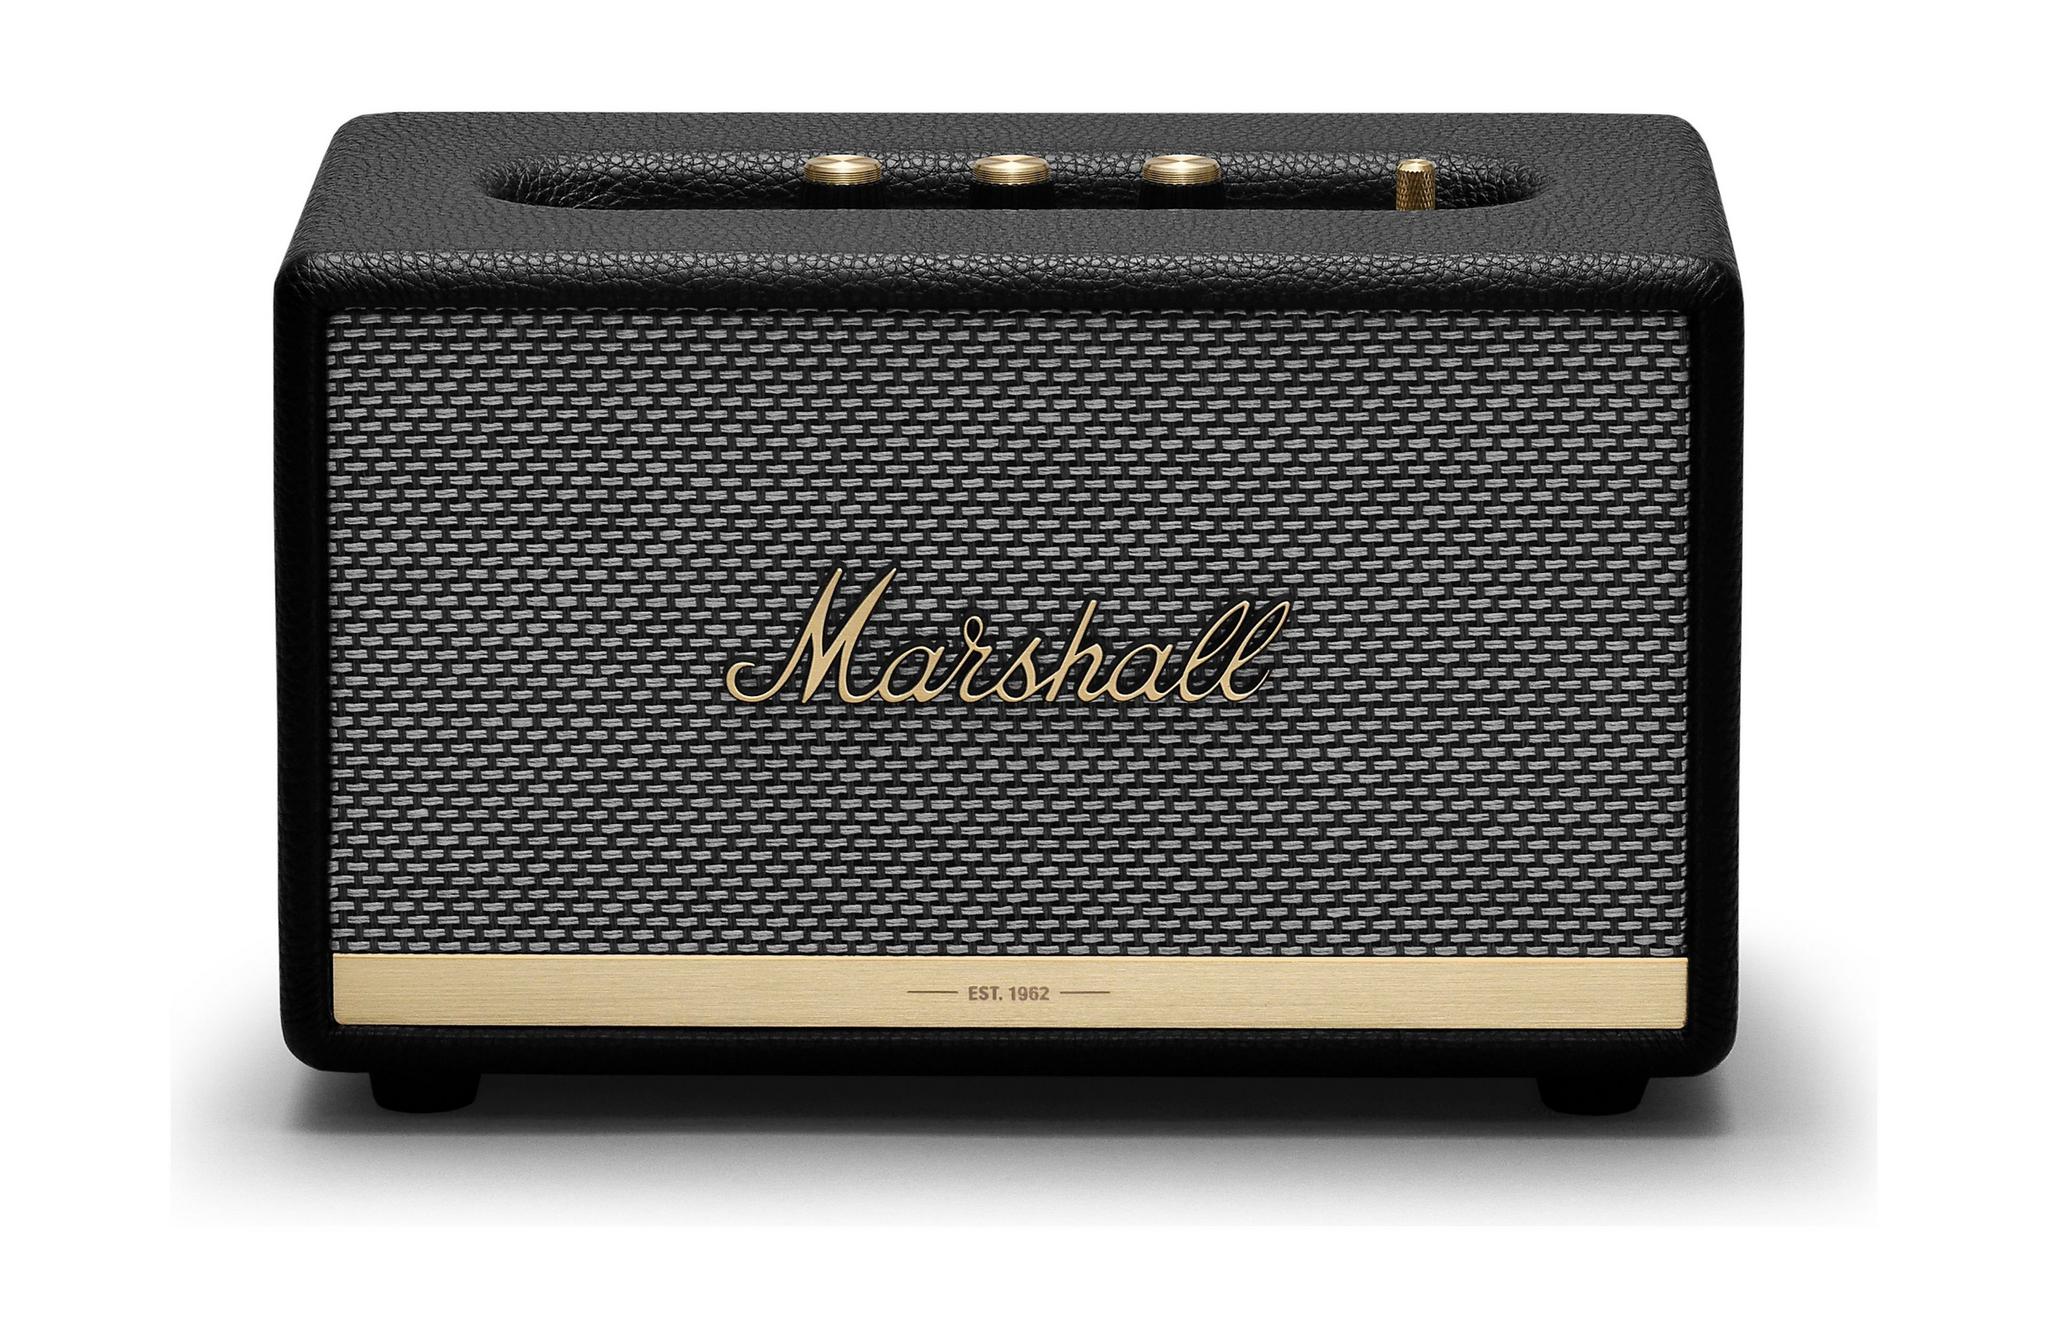 Marshall Acton II Wireless Bluetooth Speaker - Black